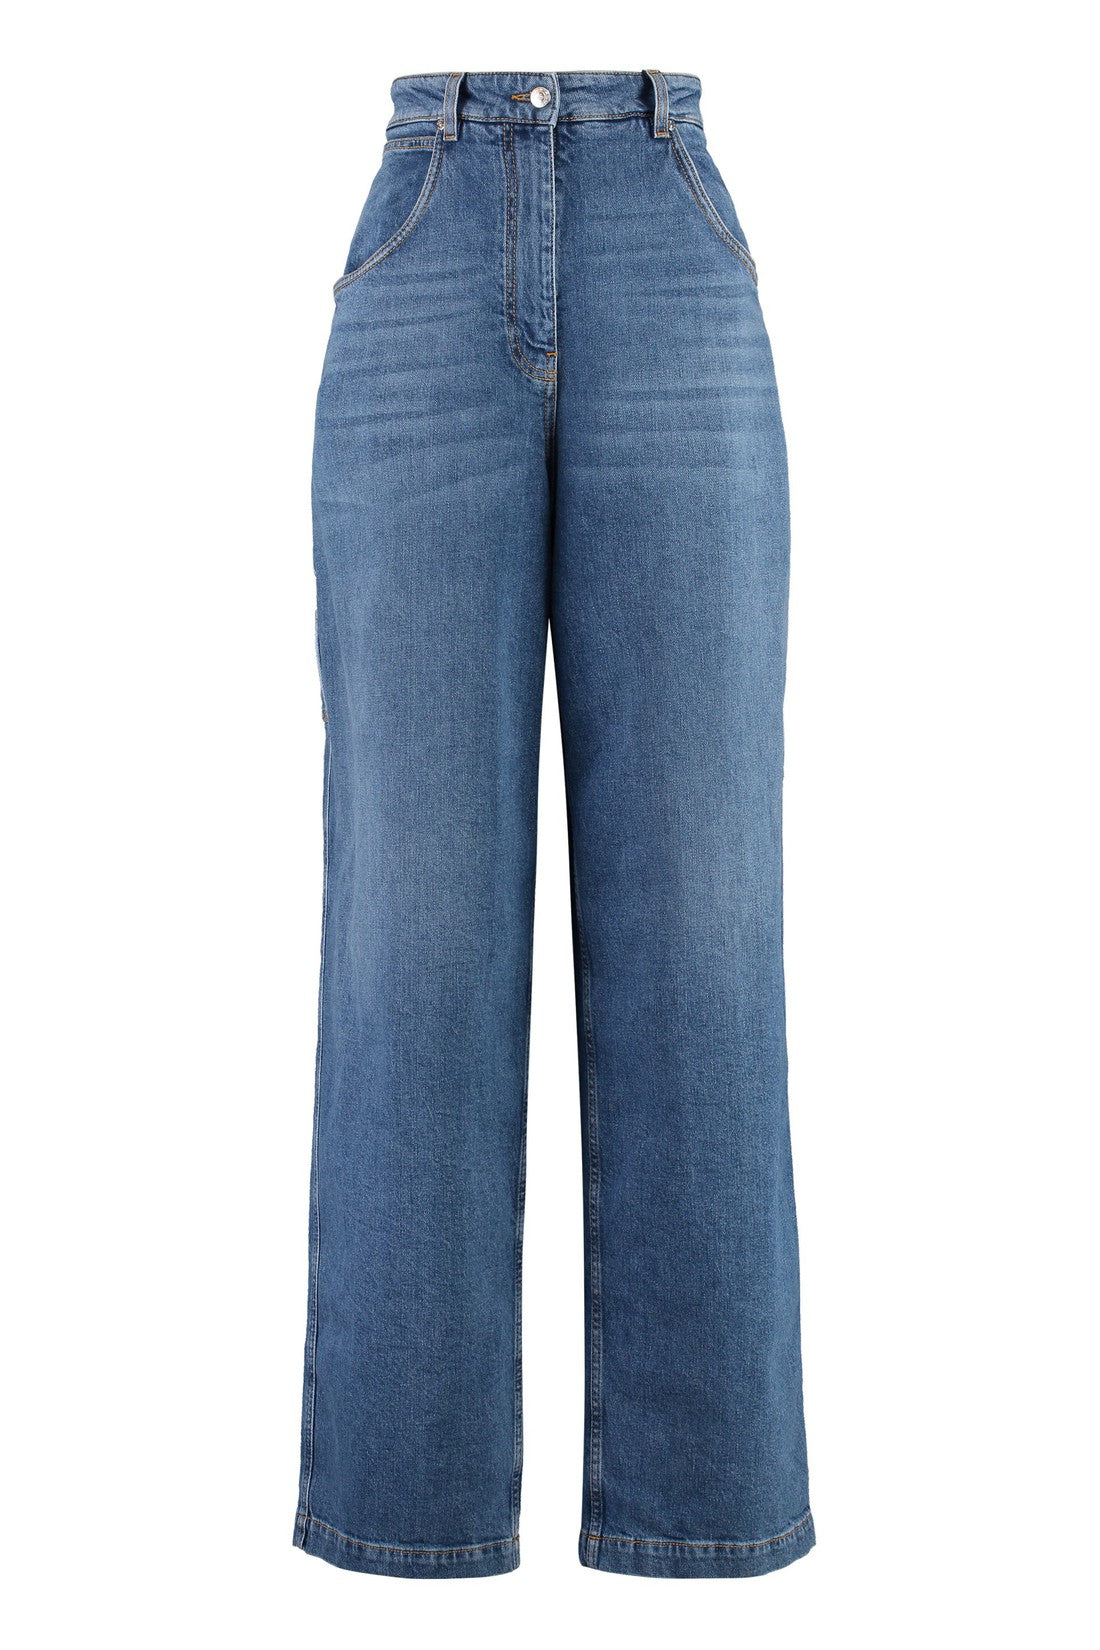 Etro-OUTLET-SALE-Wide-leg jeans-ARCHIVIST